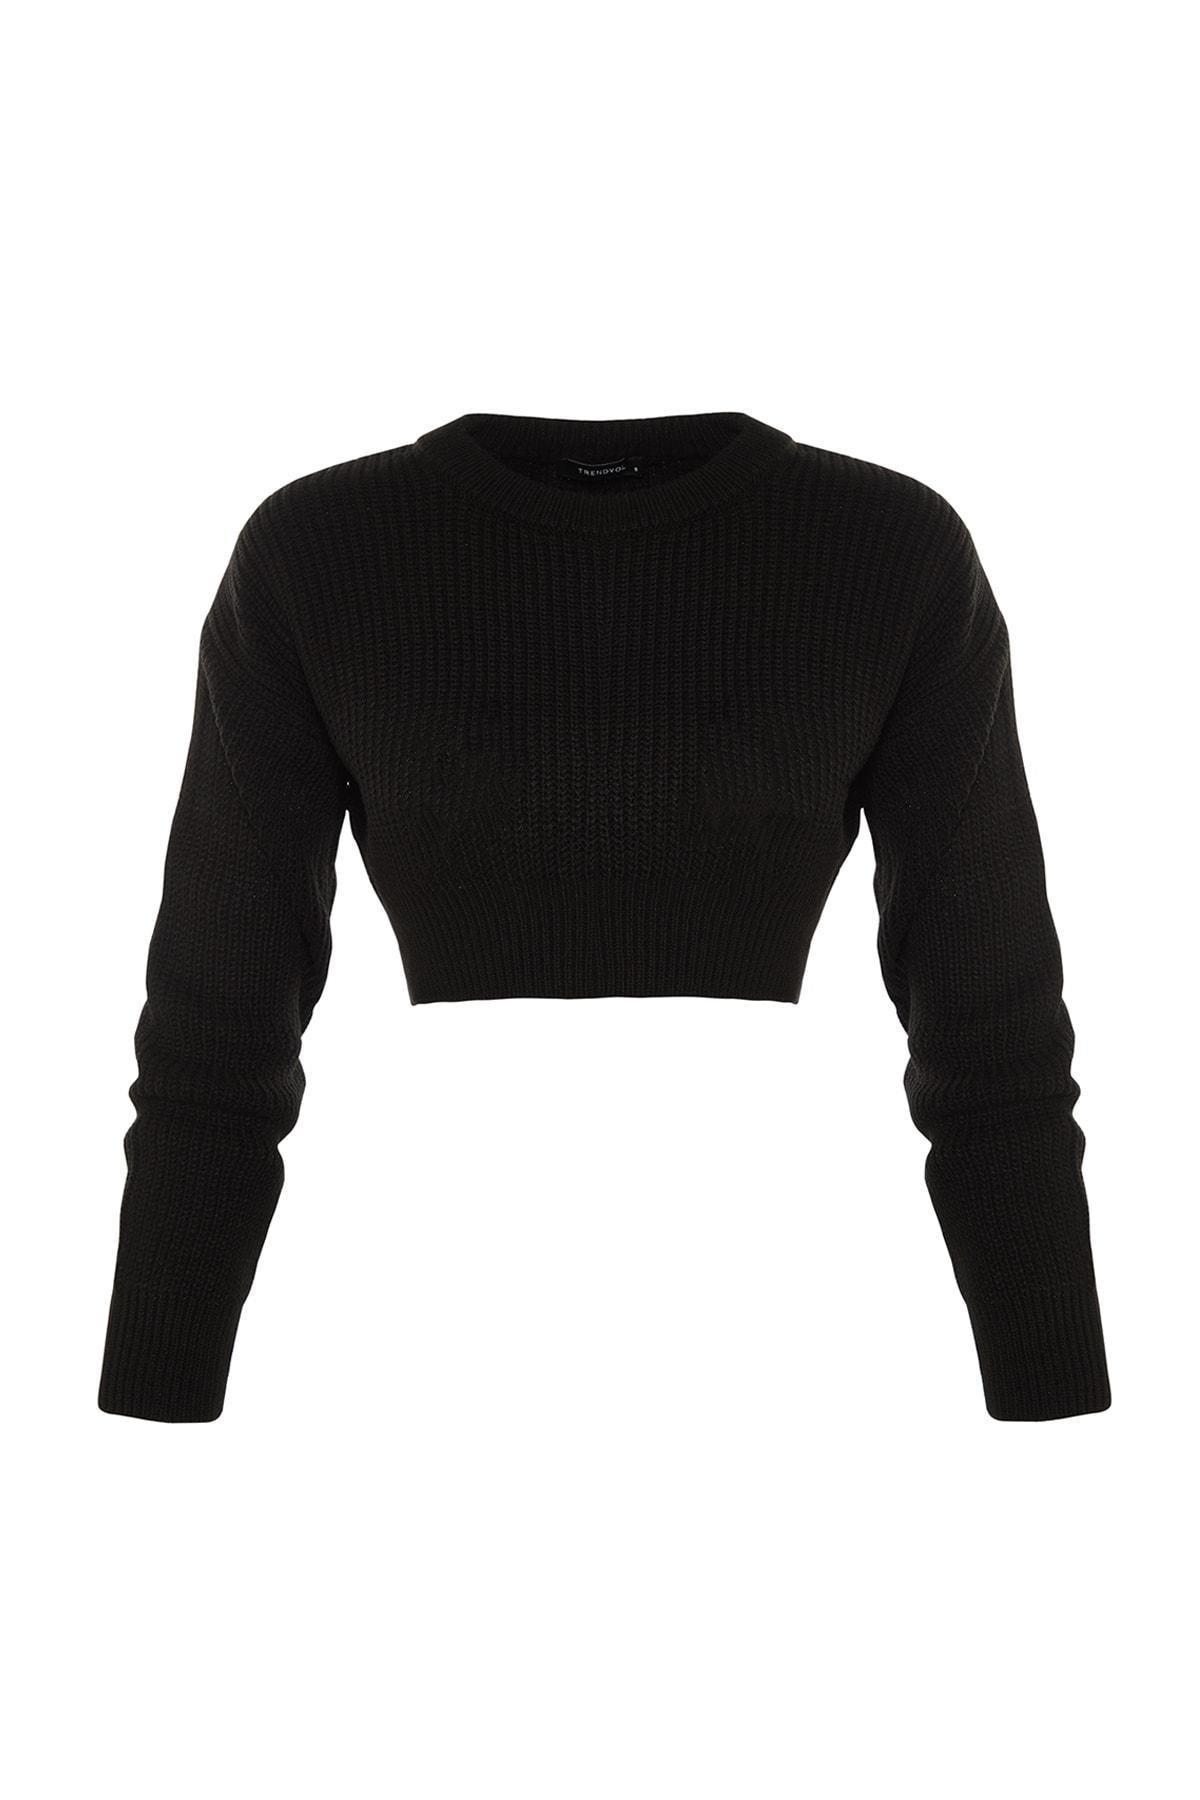 Trendyol - Black Crew Neck Sweater